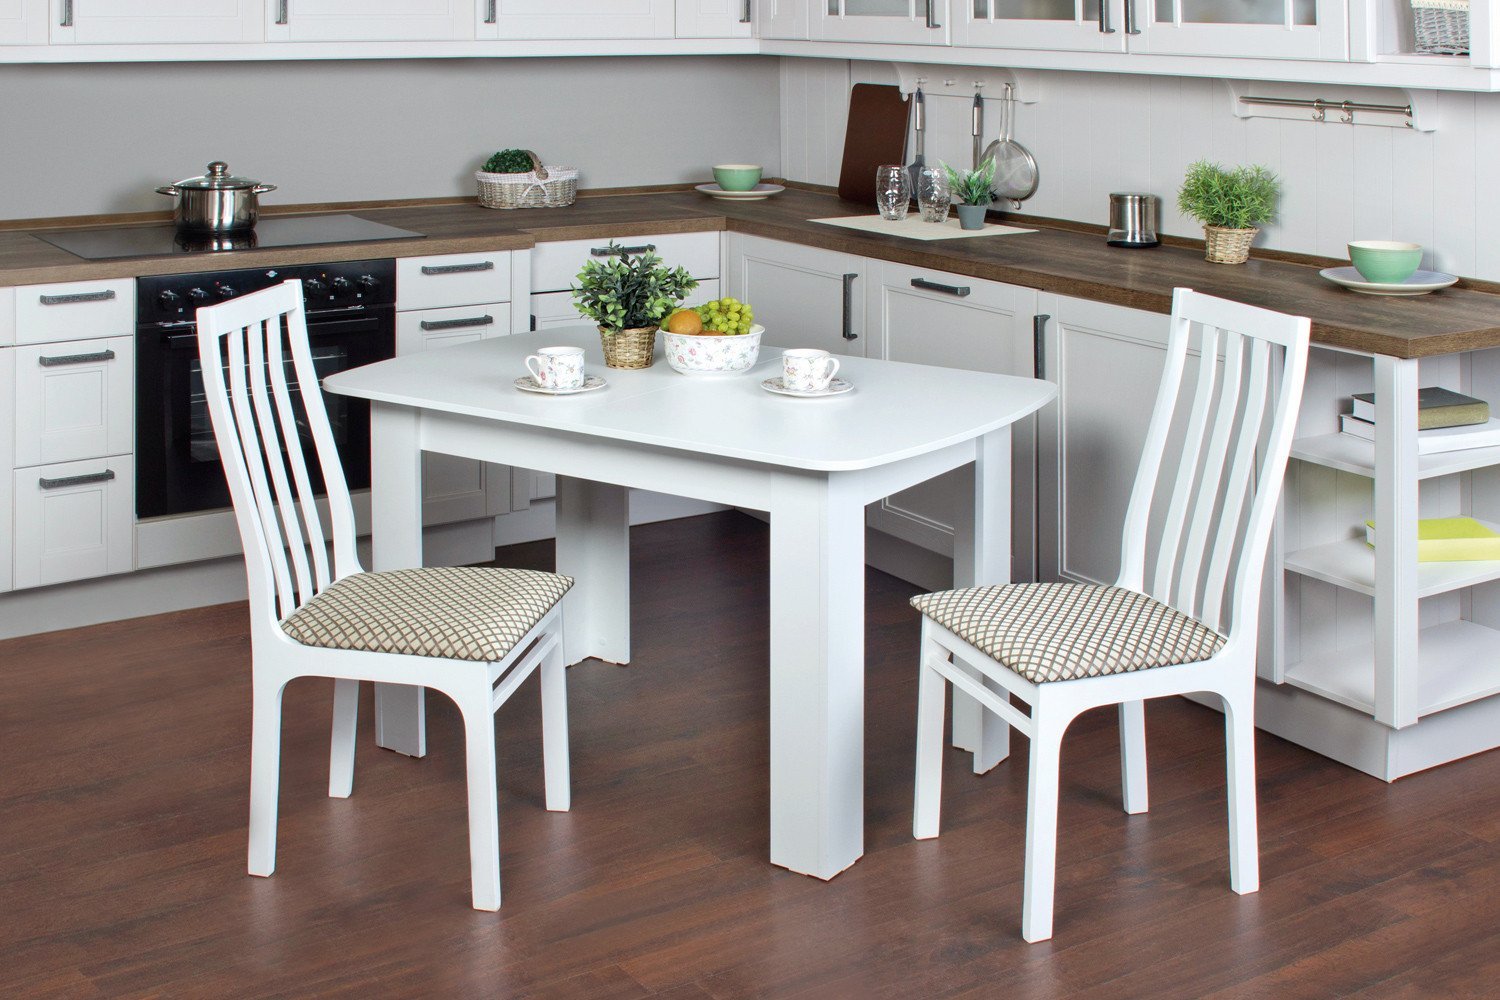 Столы кухонные м. Стол хофф белый кухонный. Хофф обеденная группа для кухни. Хофф столы кухонные раздвижные. Хофф столы и стулья для кухни.